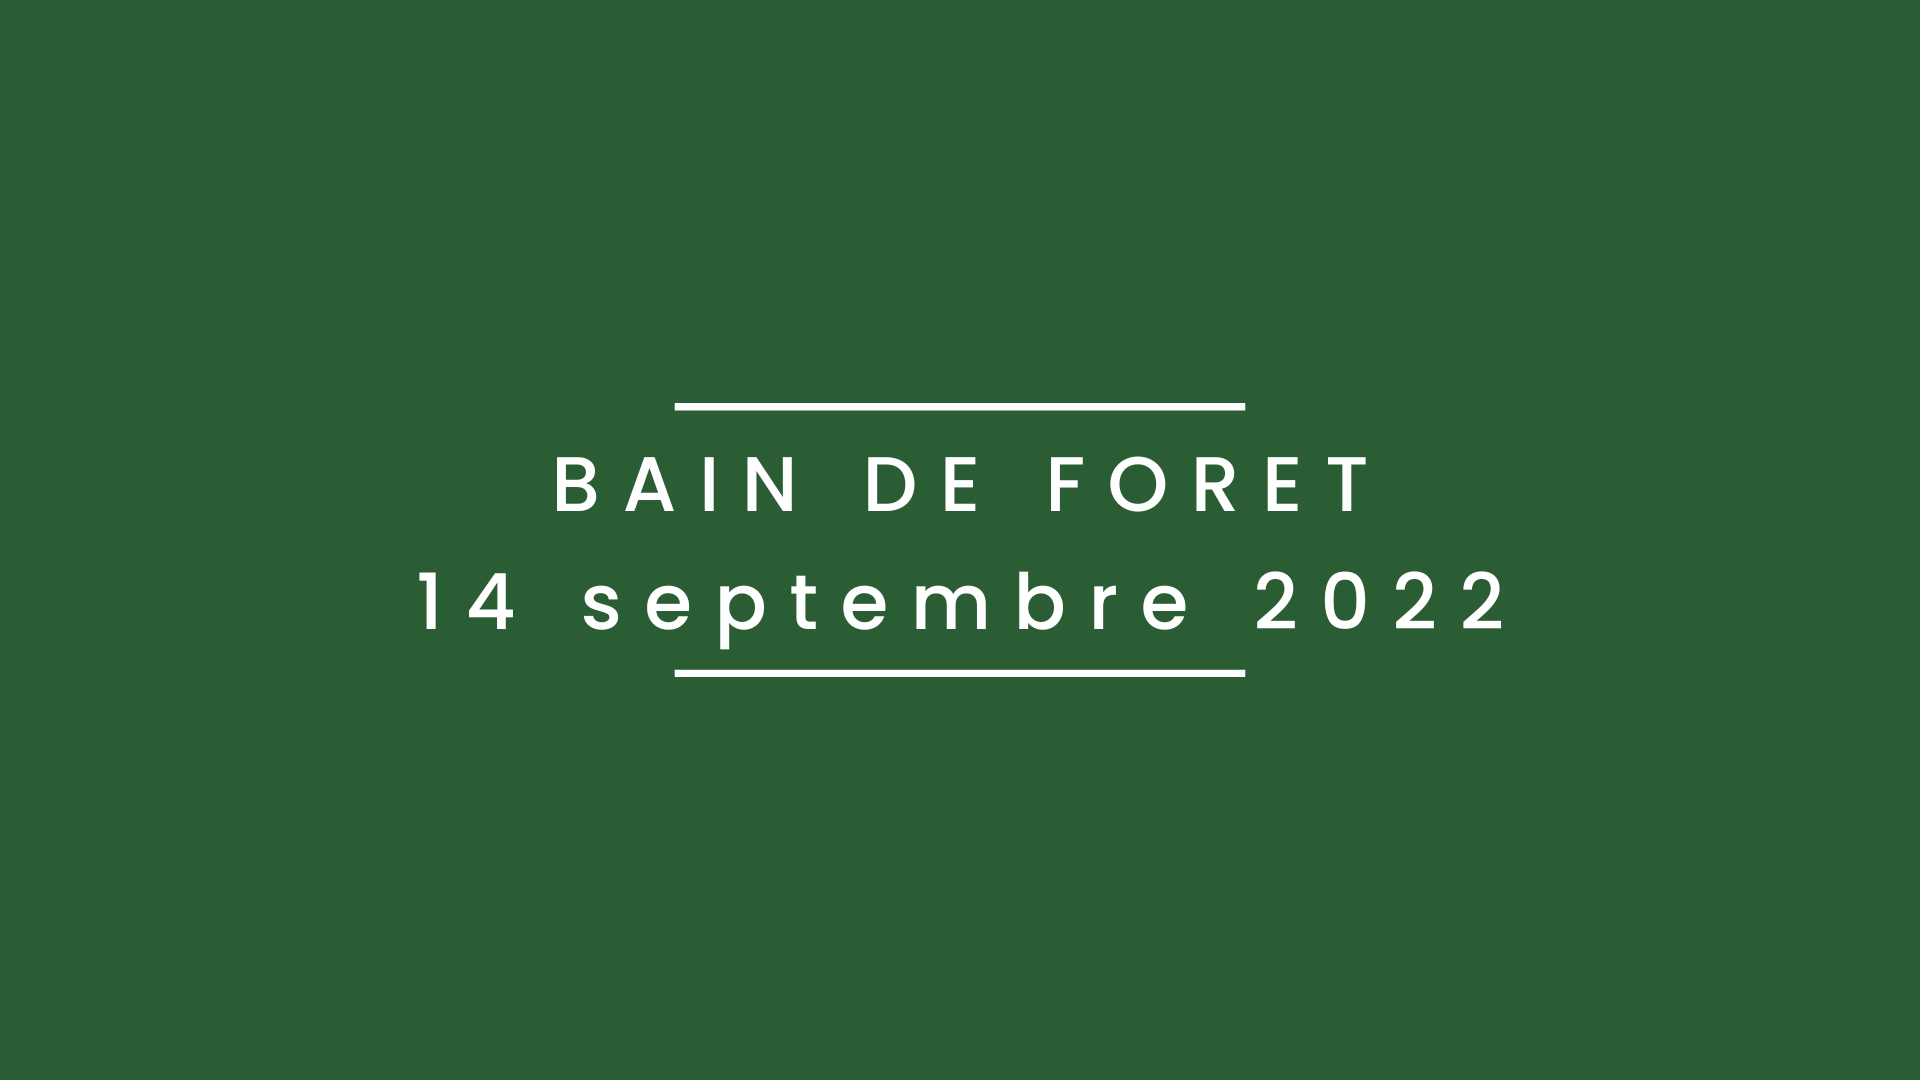 Bain de forêt 14 septembre 2022